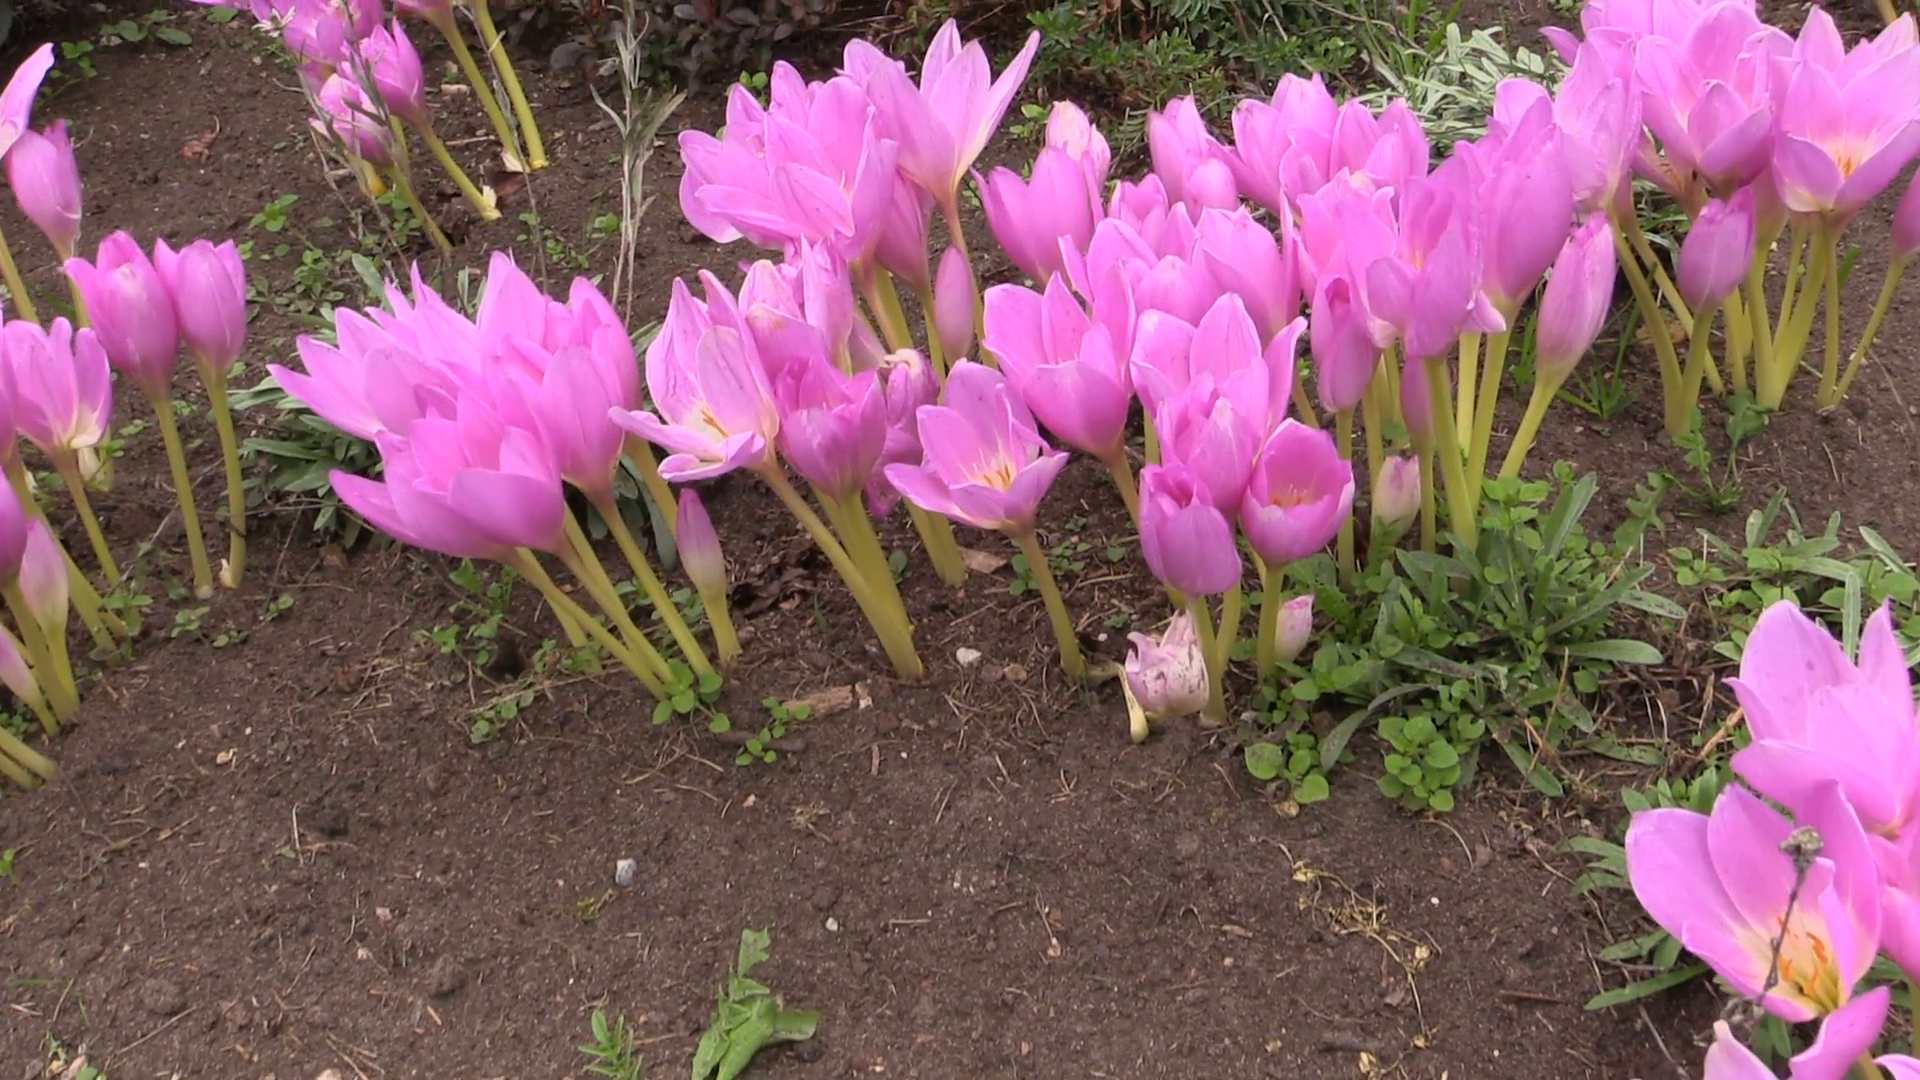 Pink crocus saffron flowers grow in botanical garden in autumn ...